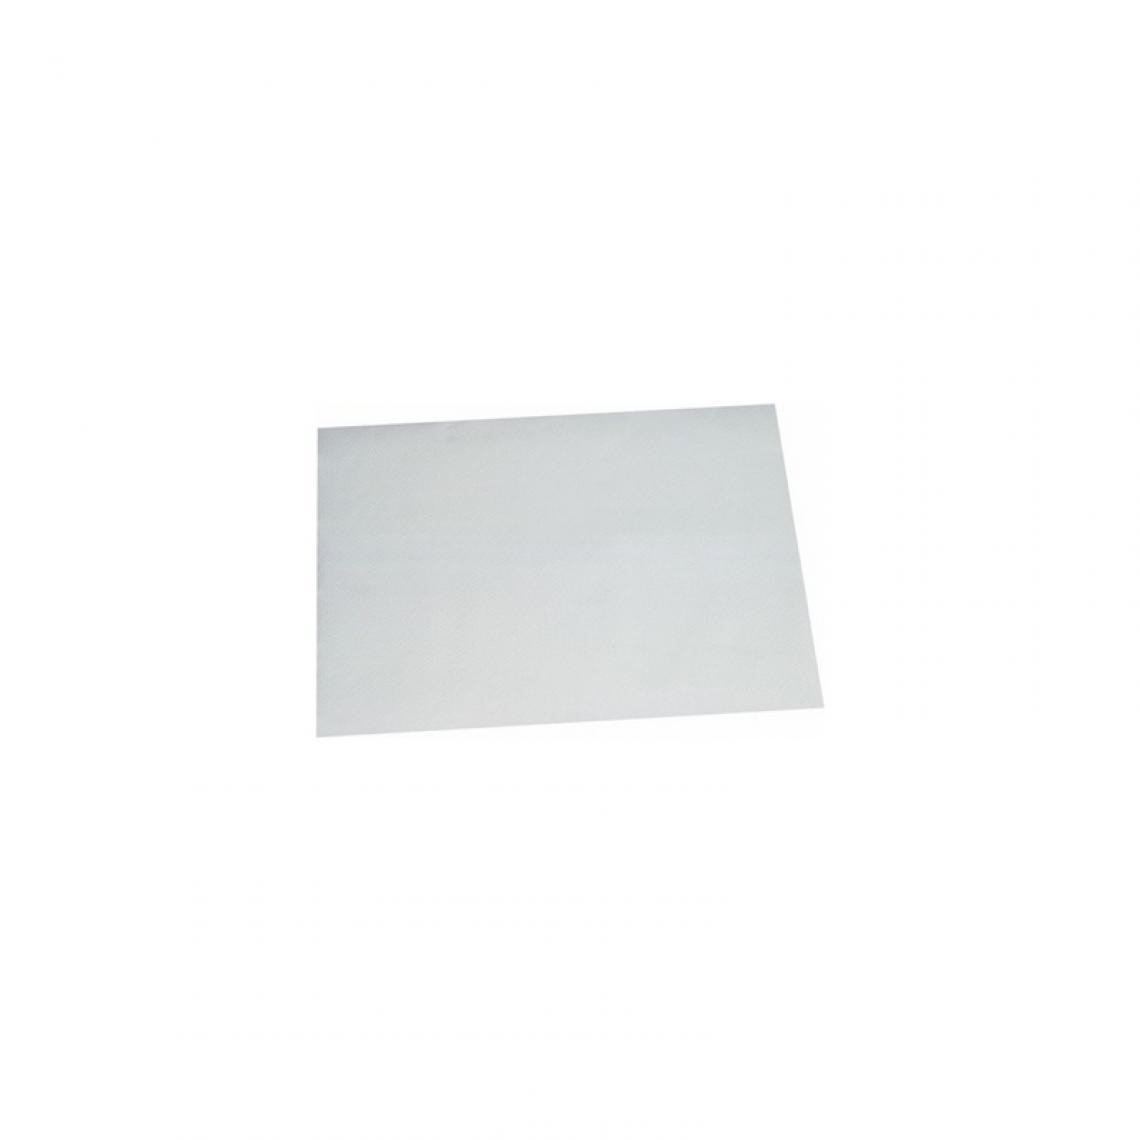 PAPSTAR - PAPSTAR Set de table en papier, 300 x 400 mm, blanc () - Kits créatifs